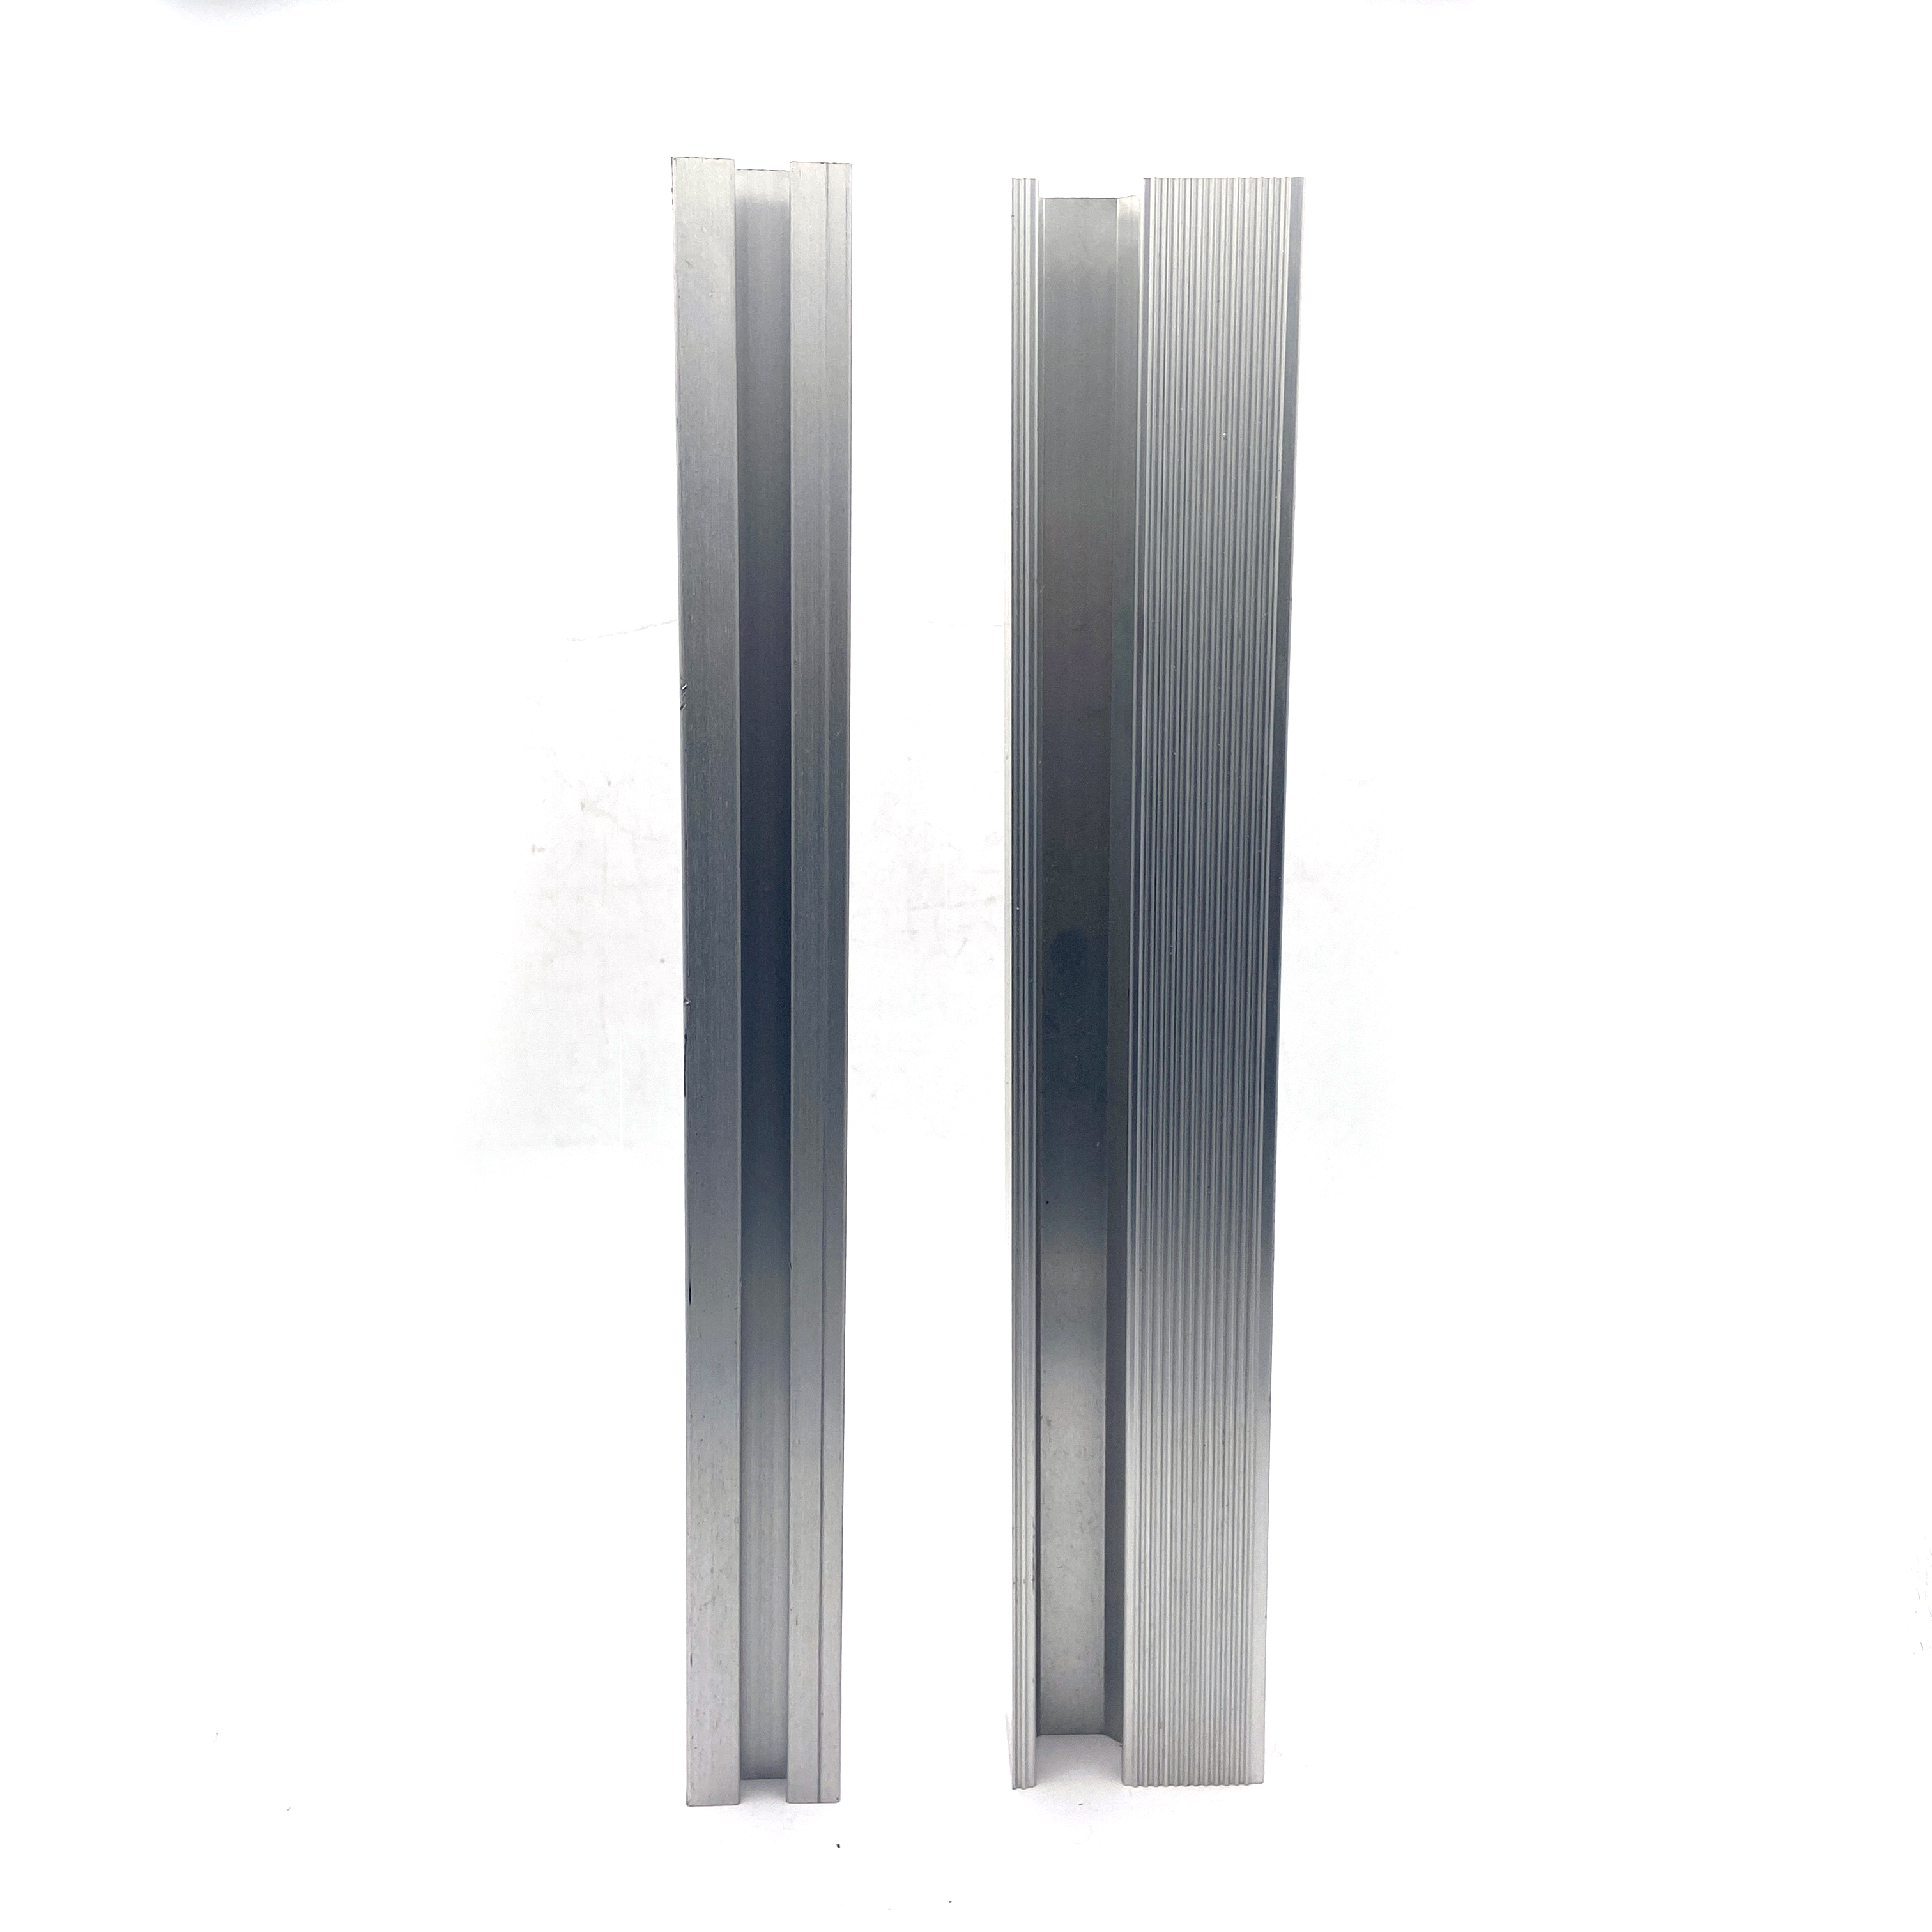 Perfil de extrusión de aluminio personalizado anodizado de la serie 6000